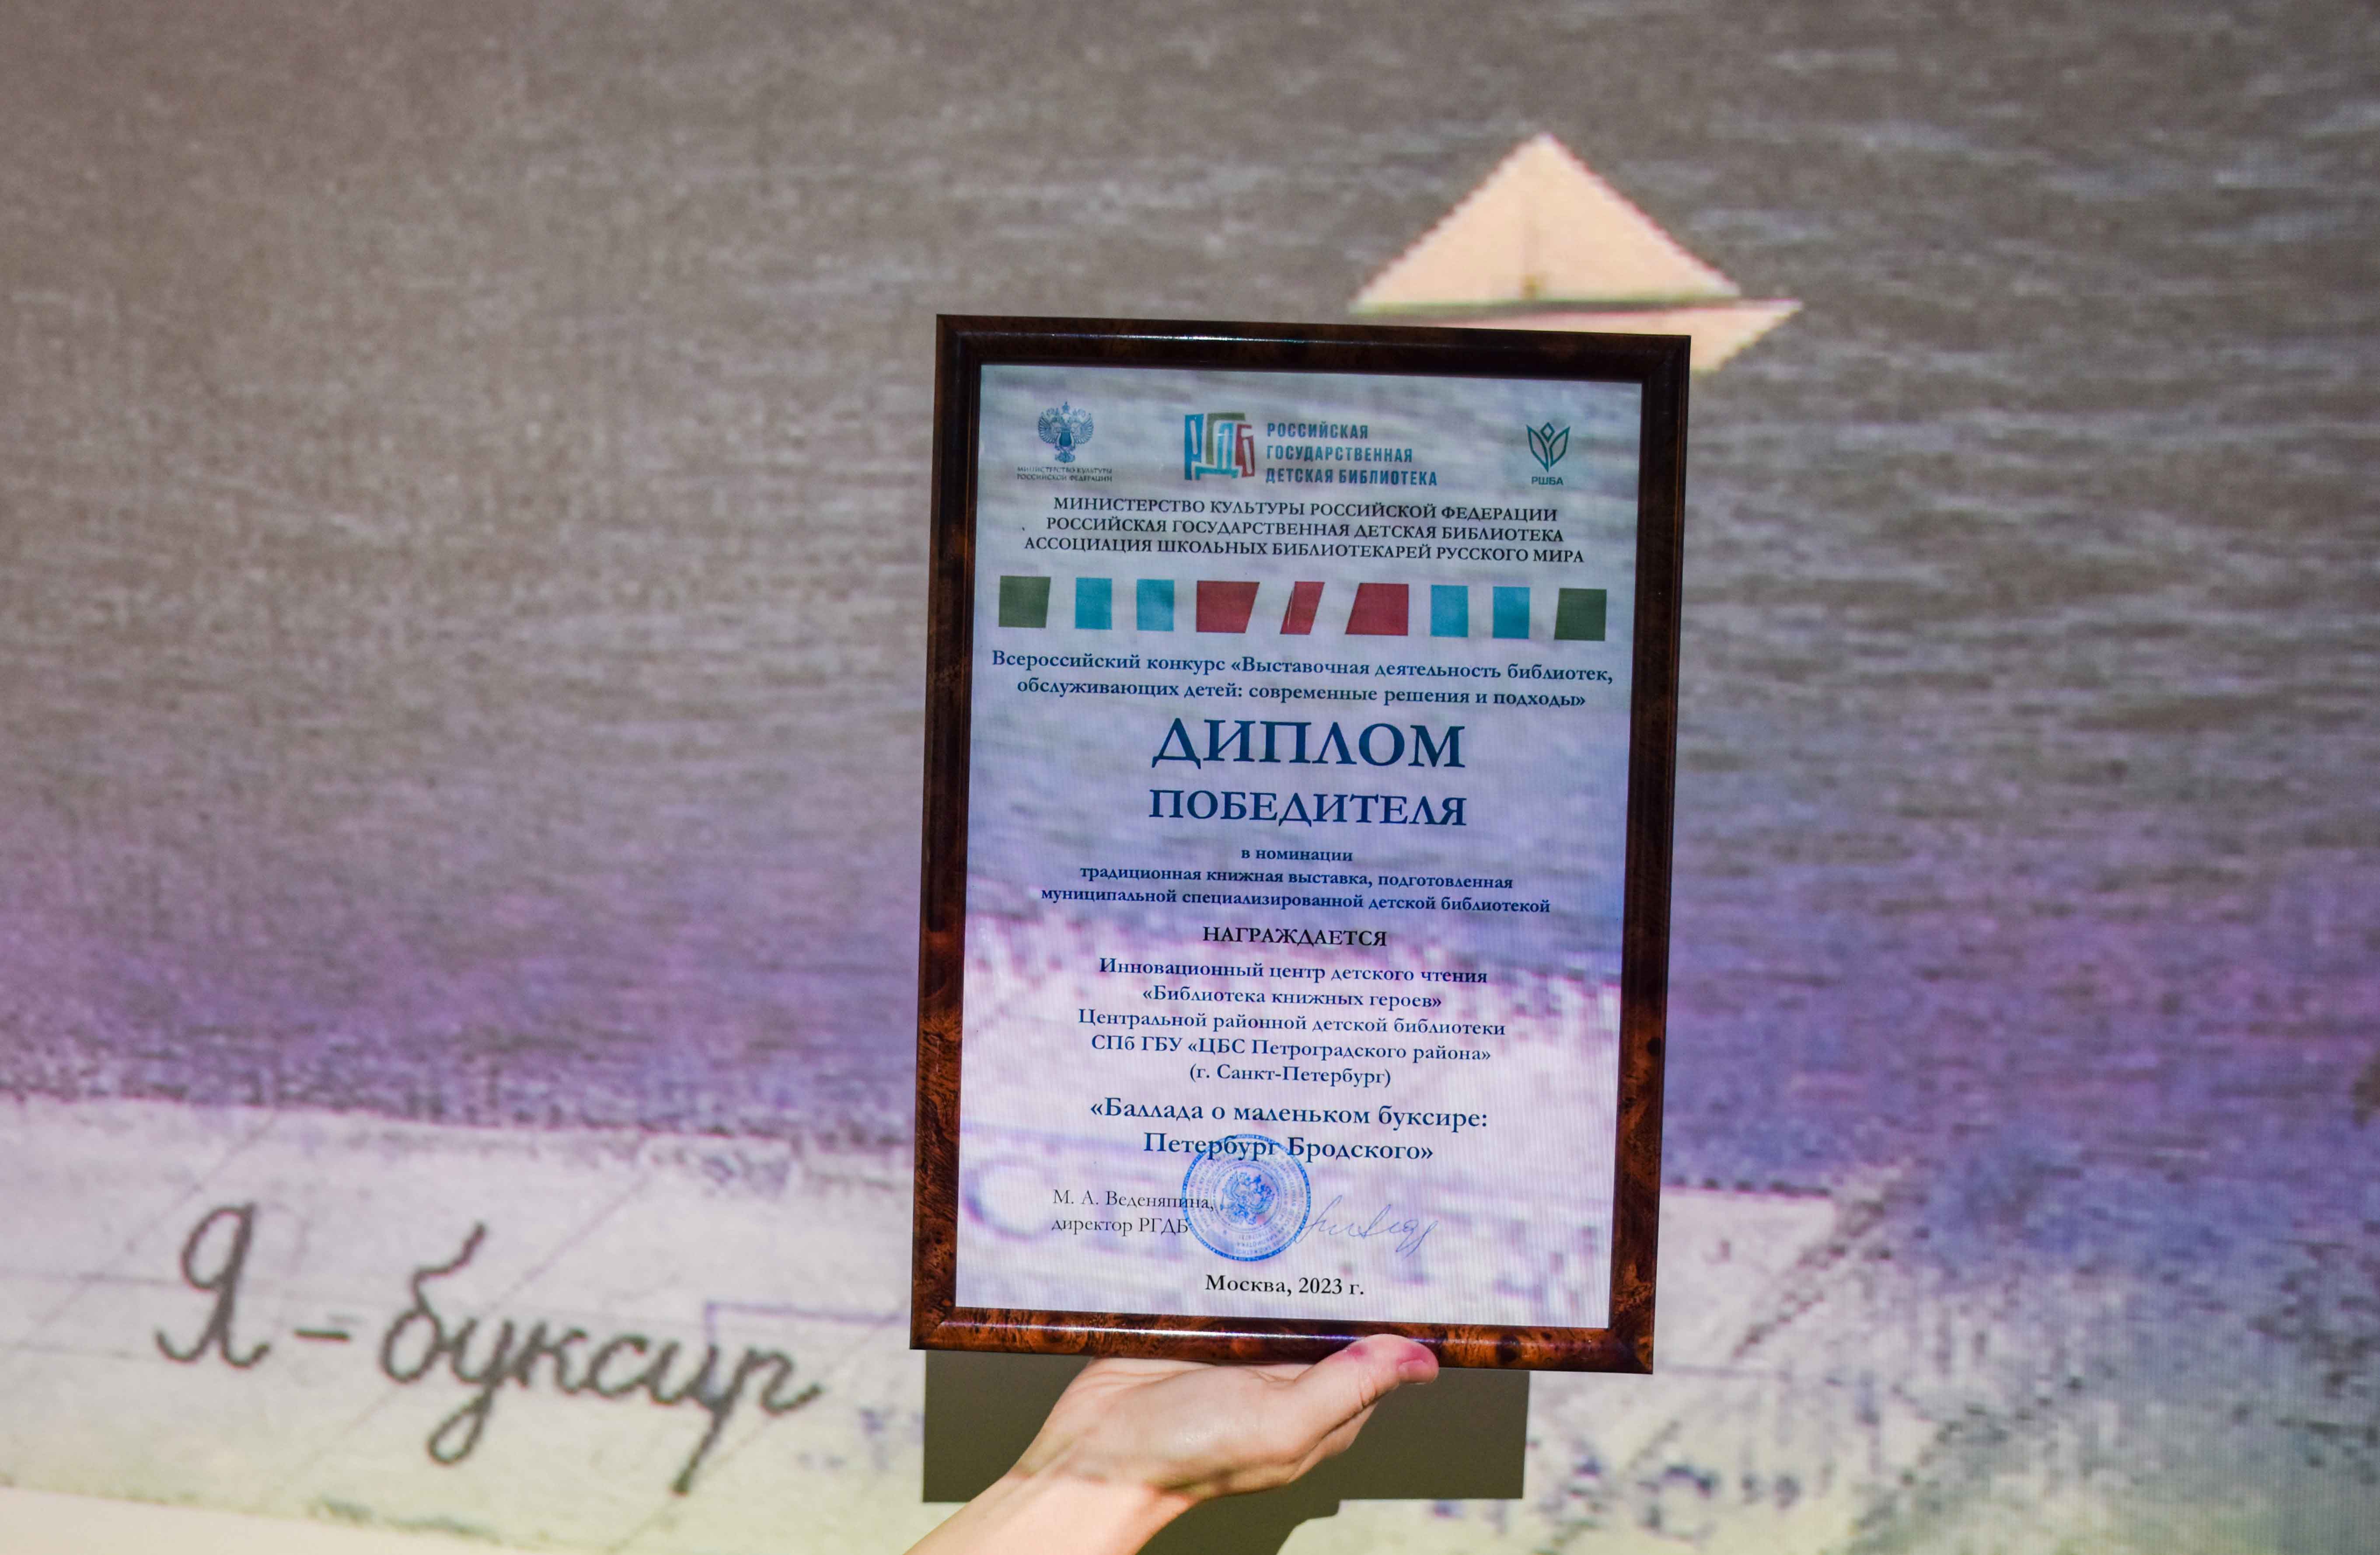 Библиотека книжных героев победила во всероссийском конкурсе выставок